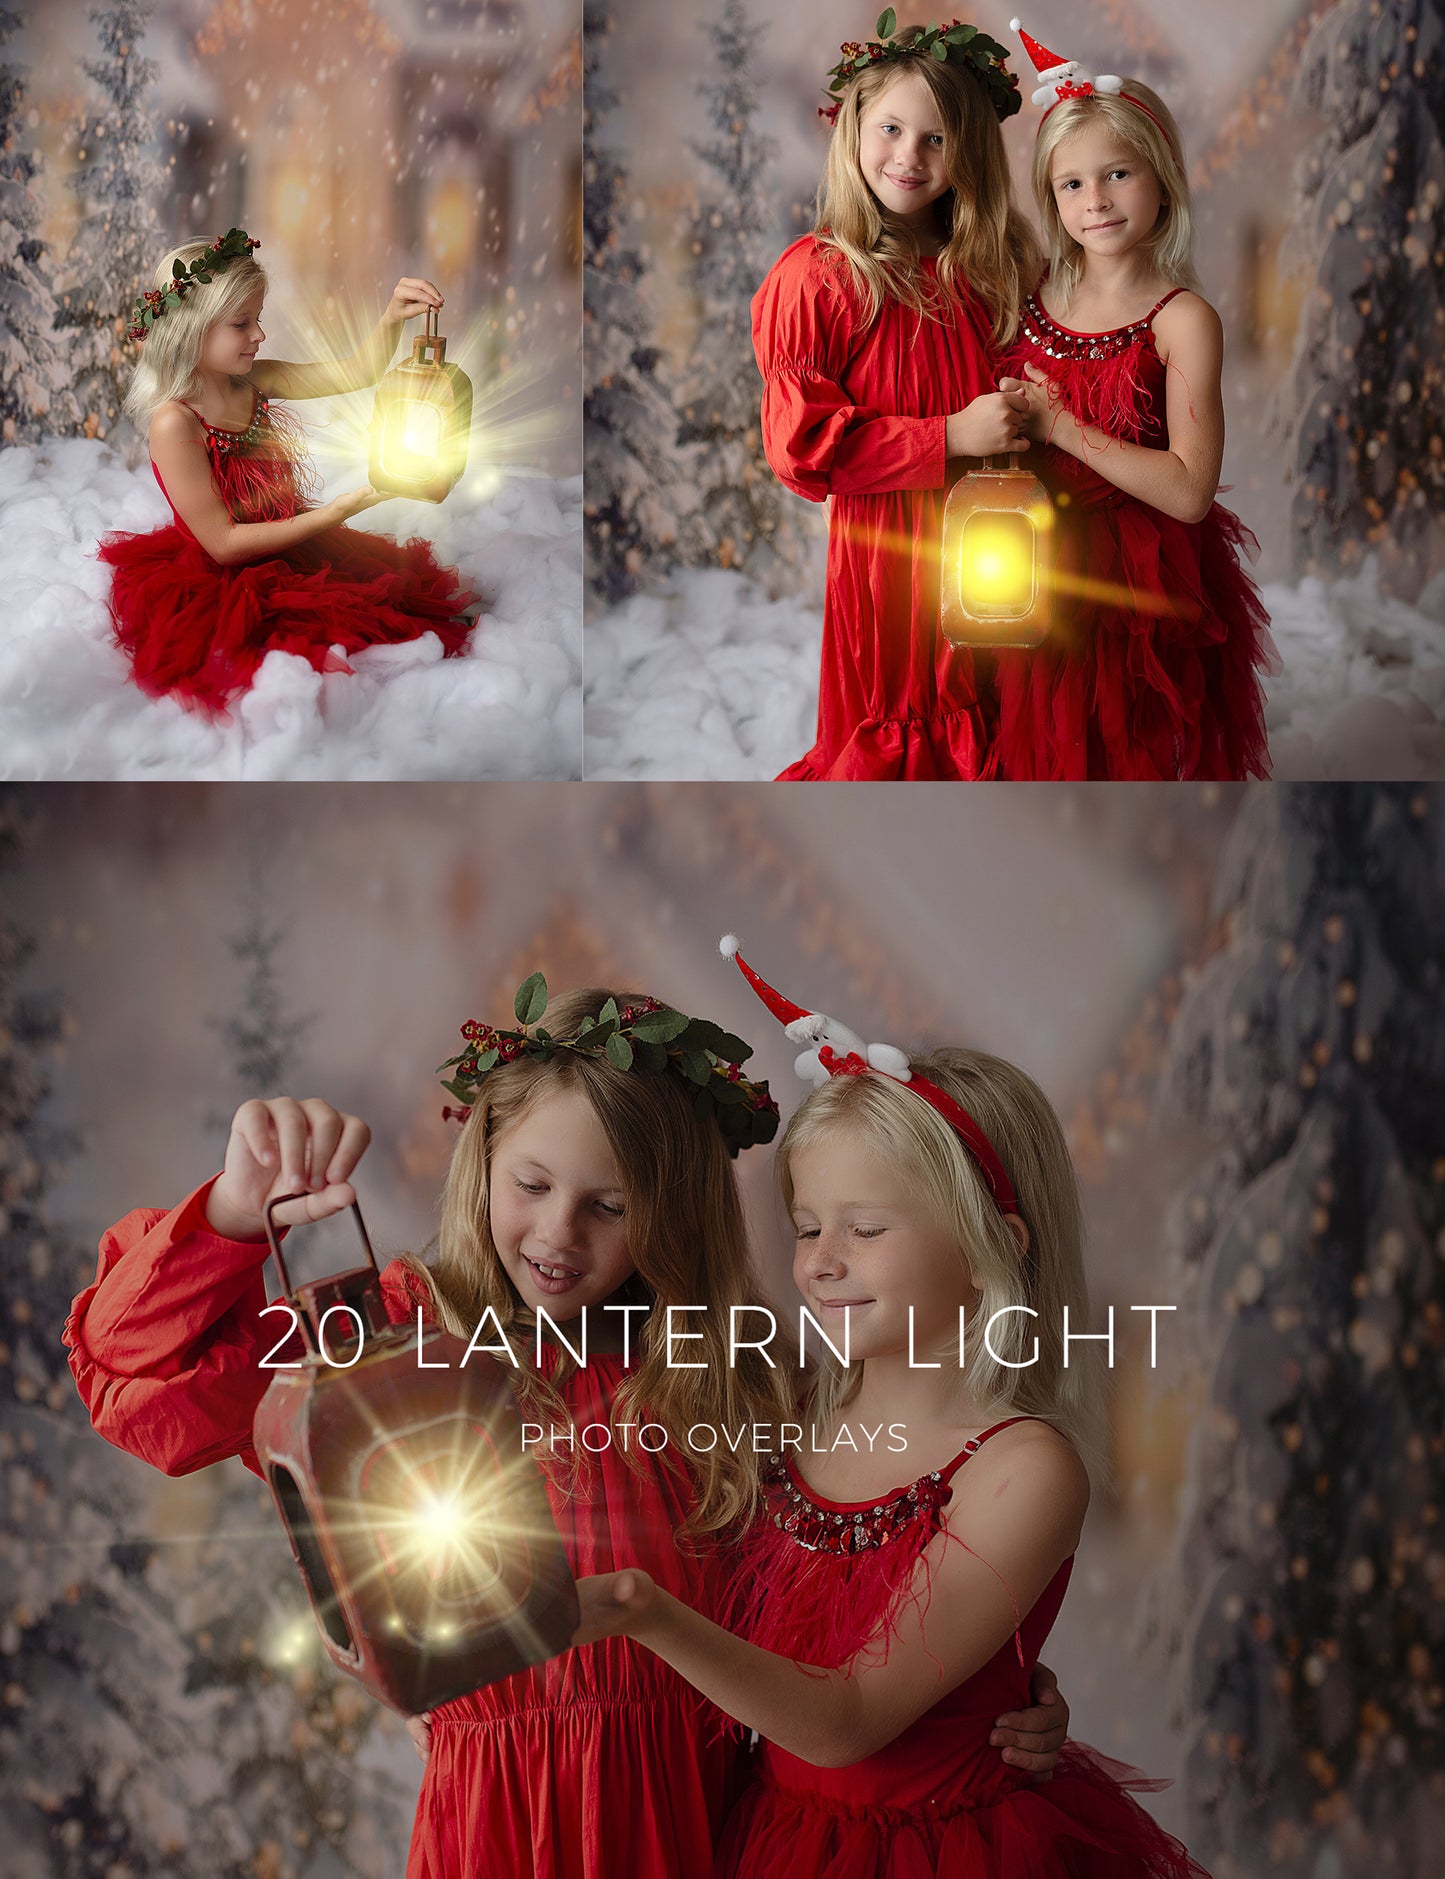 Lantern Light Photo Overlays